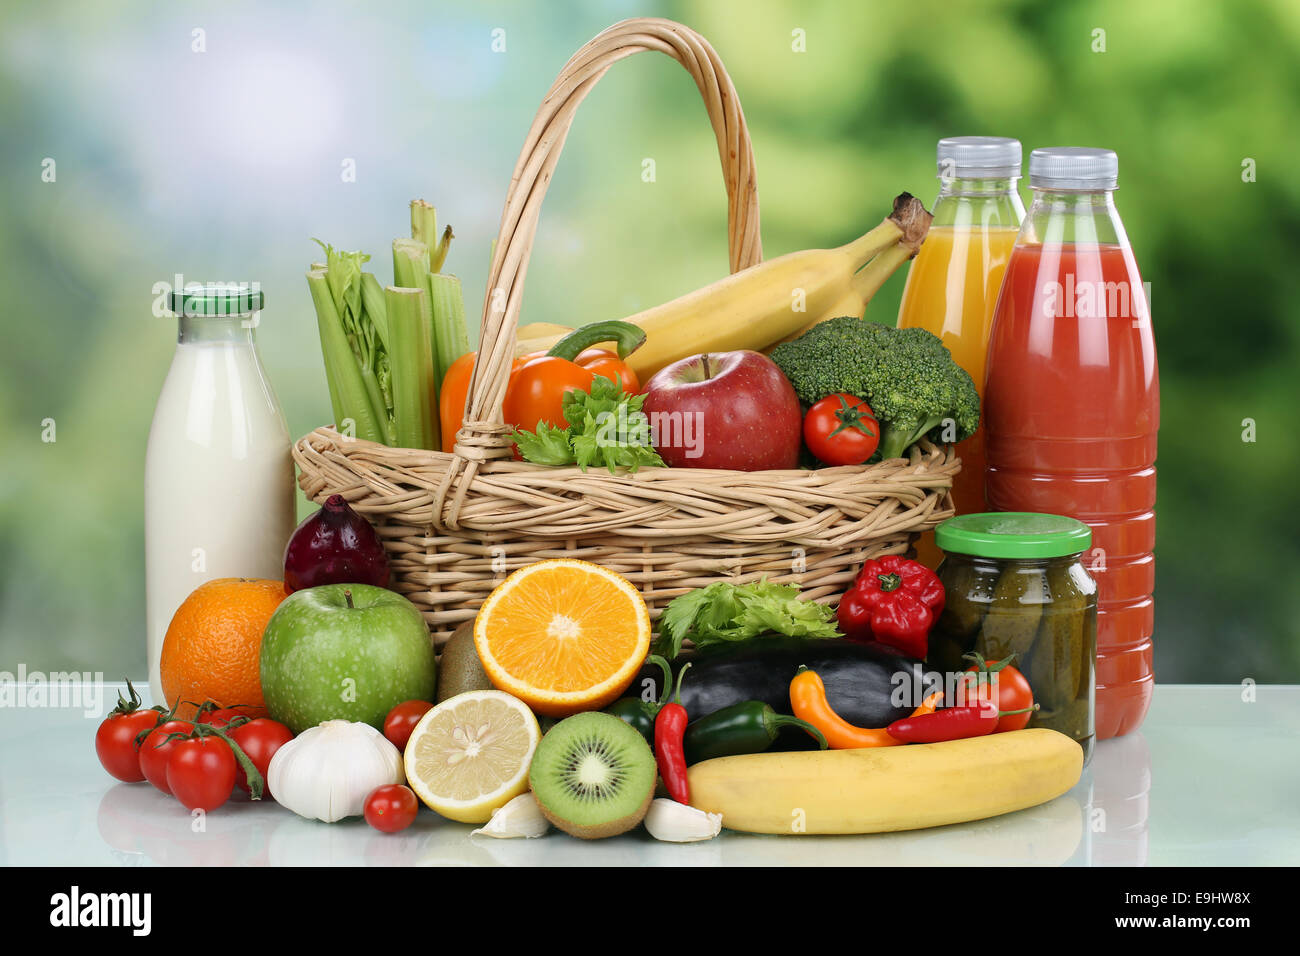 Frutta e verdura, prodotti alimentari e di bevande in un carrello Foto Stock